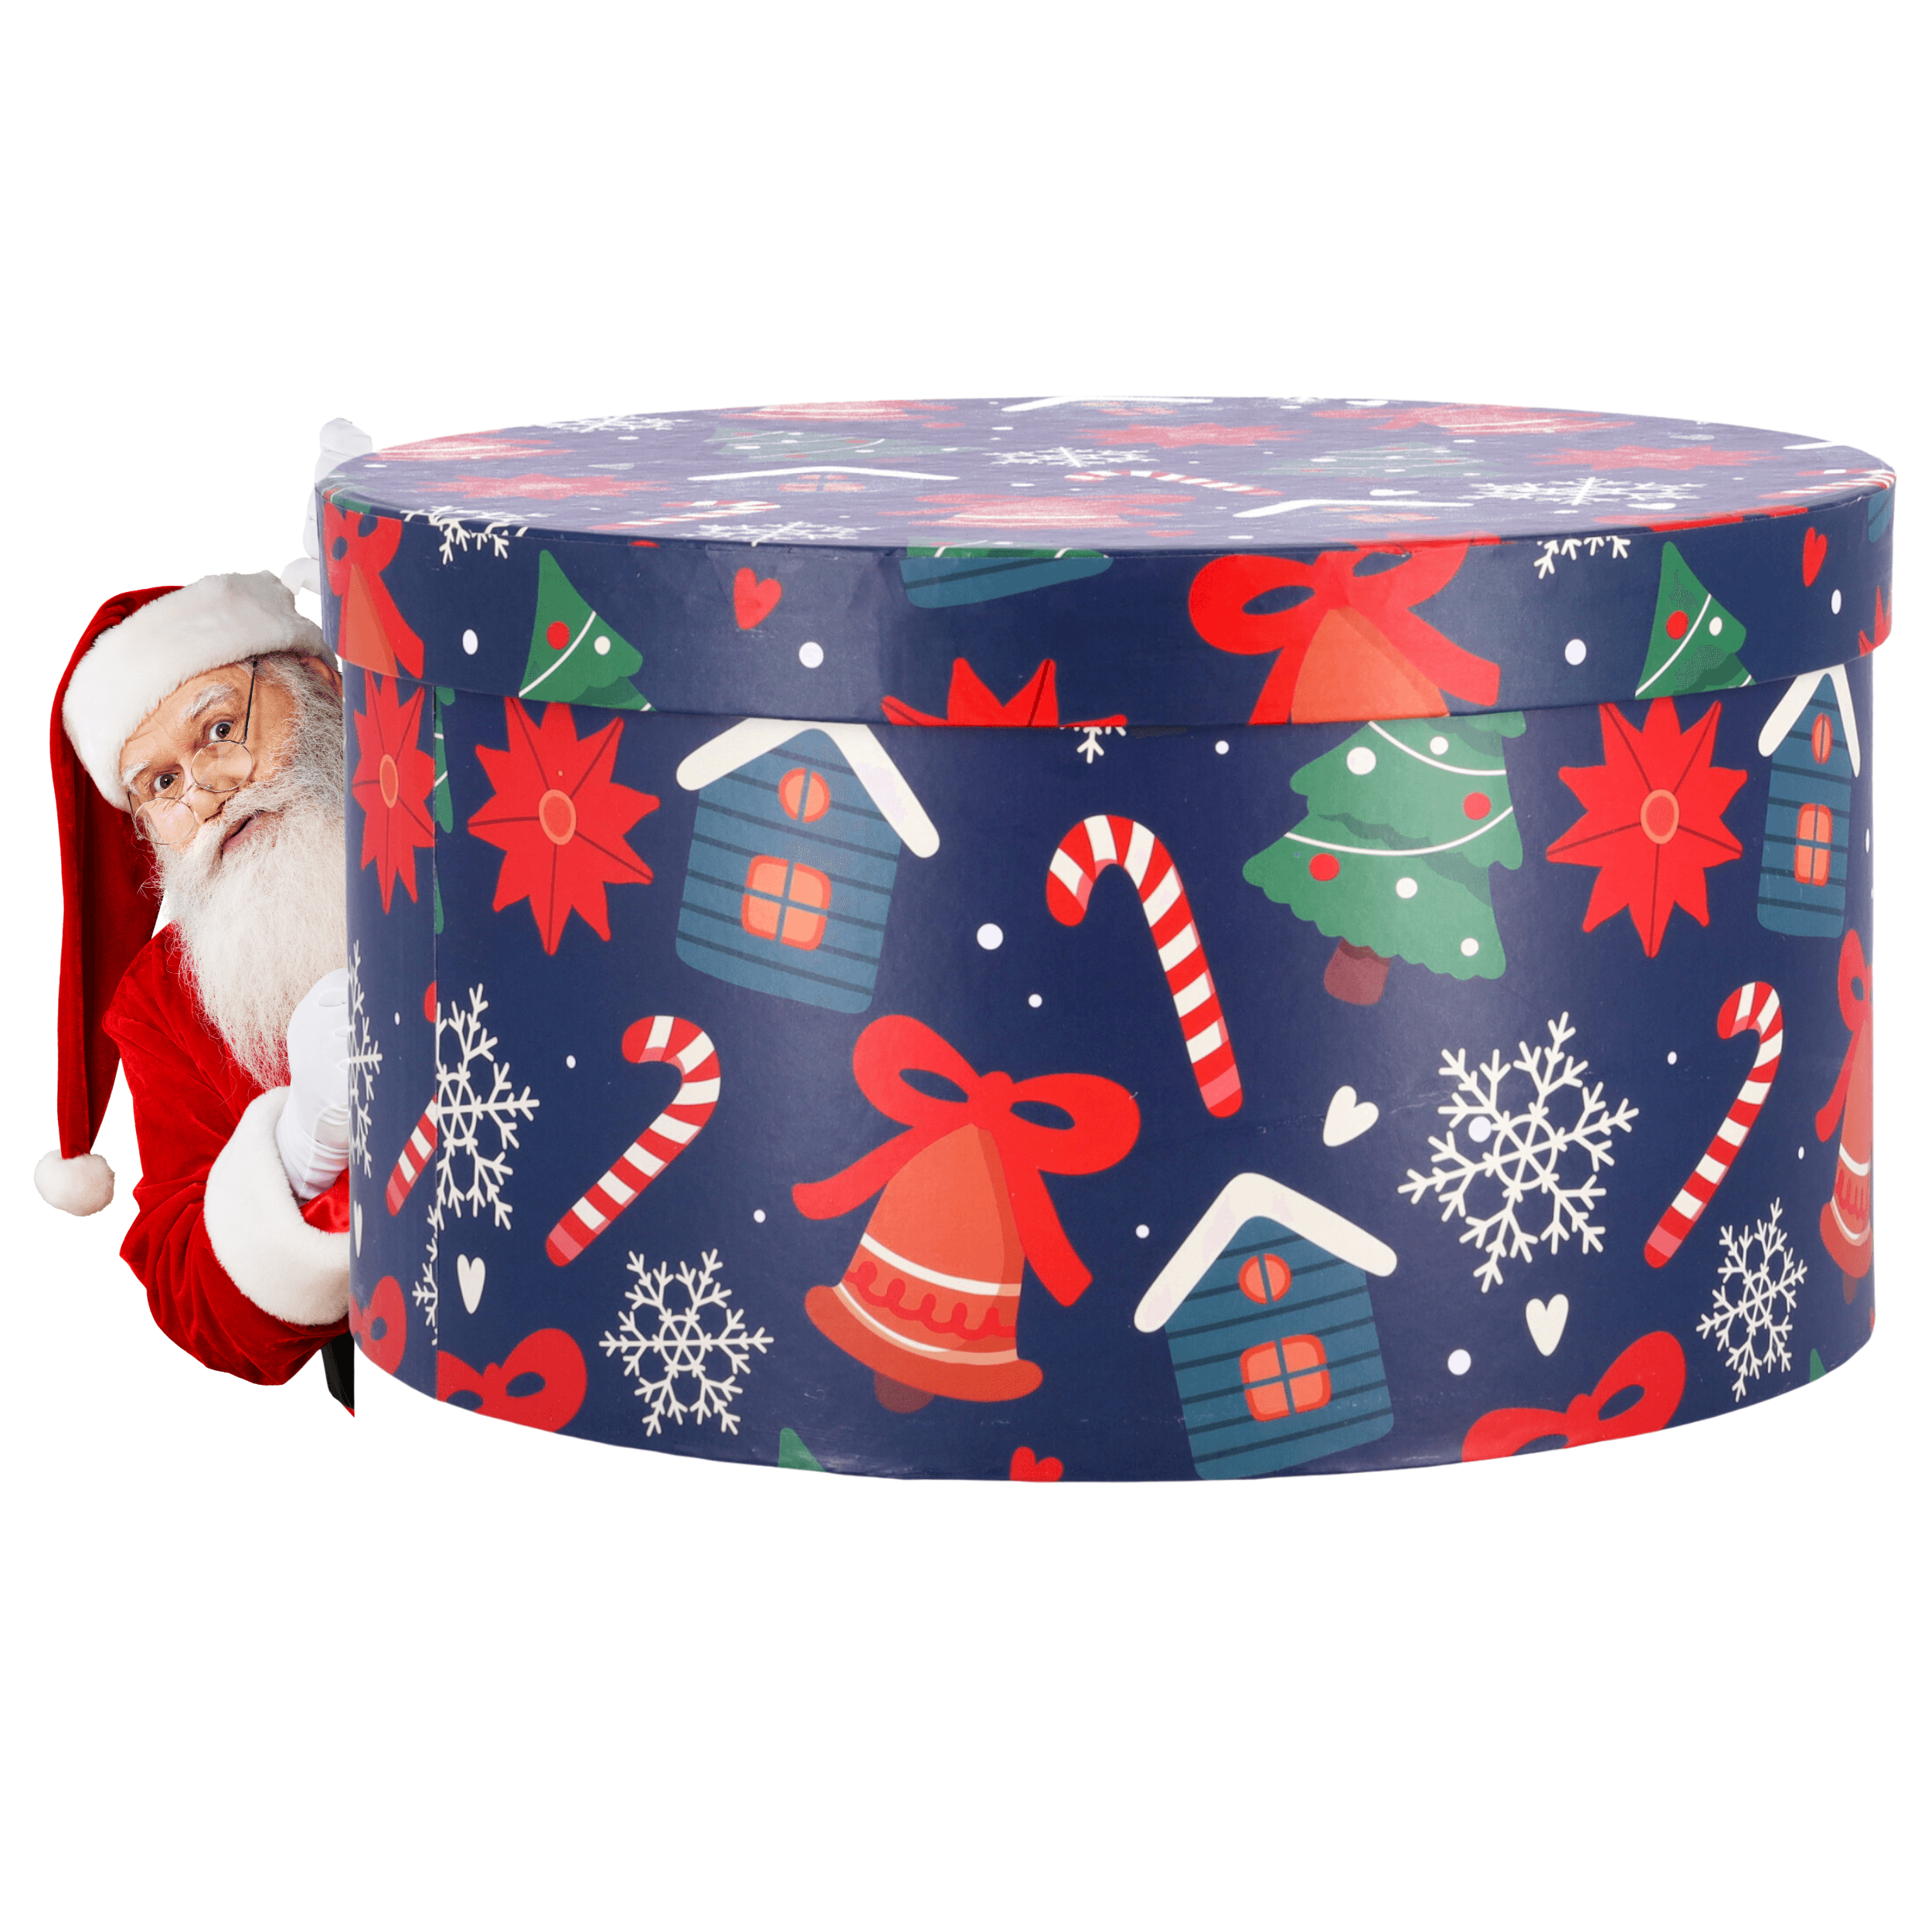 Christmas round gift box 16,8x9,7 cm